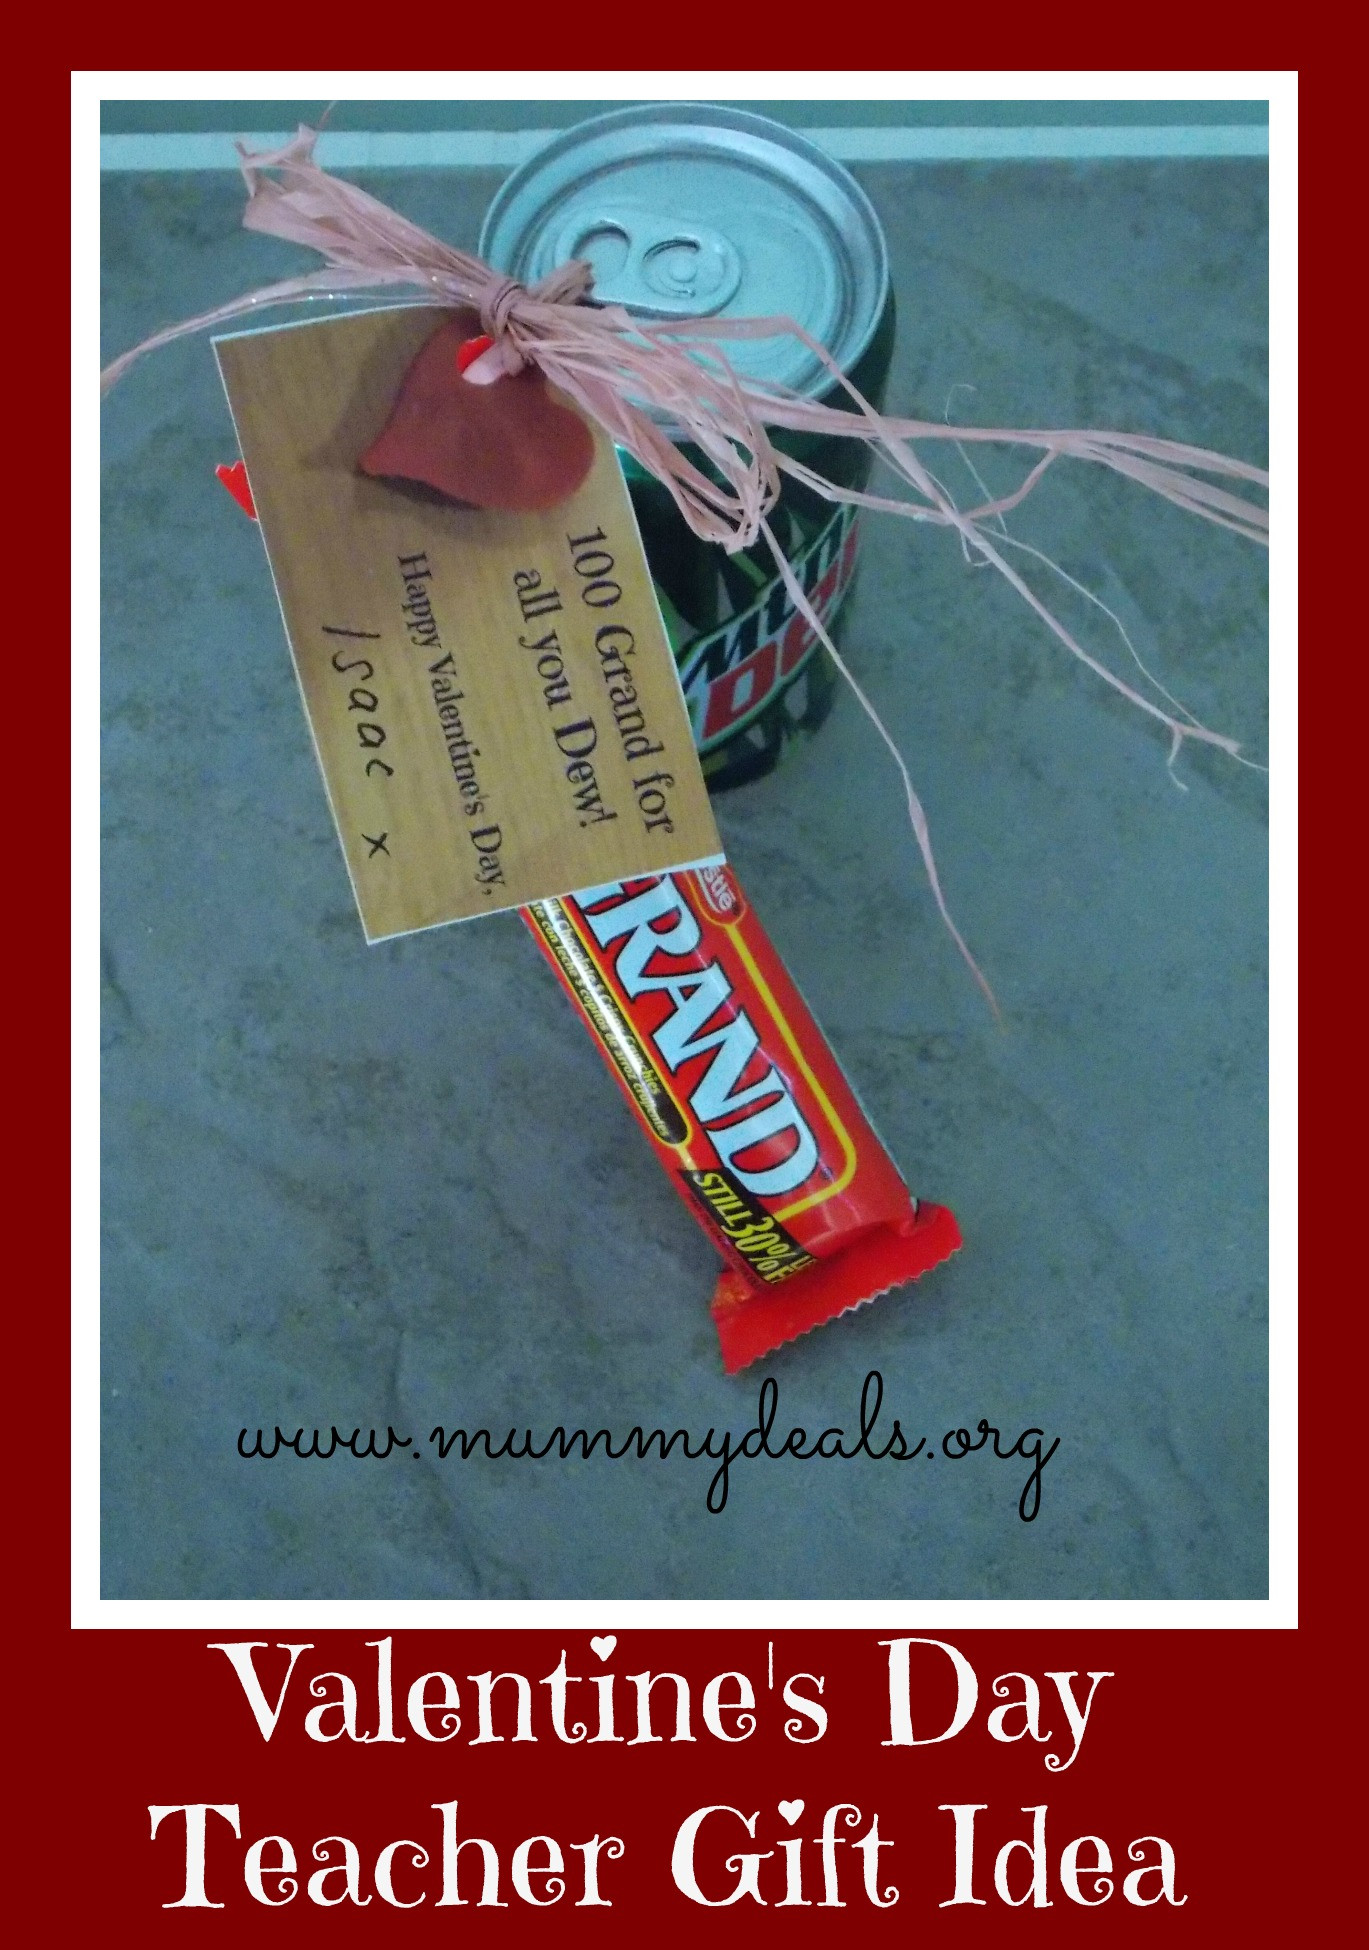 Valentines Day Ideas For Teachers
 6 Valentine s Day Teacher Gift Ideas Mummy Deals